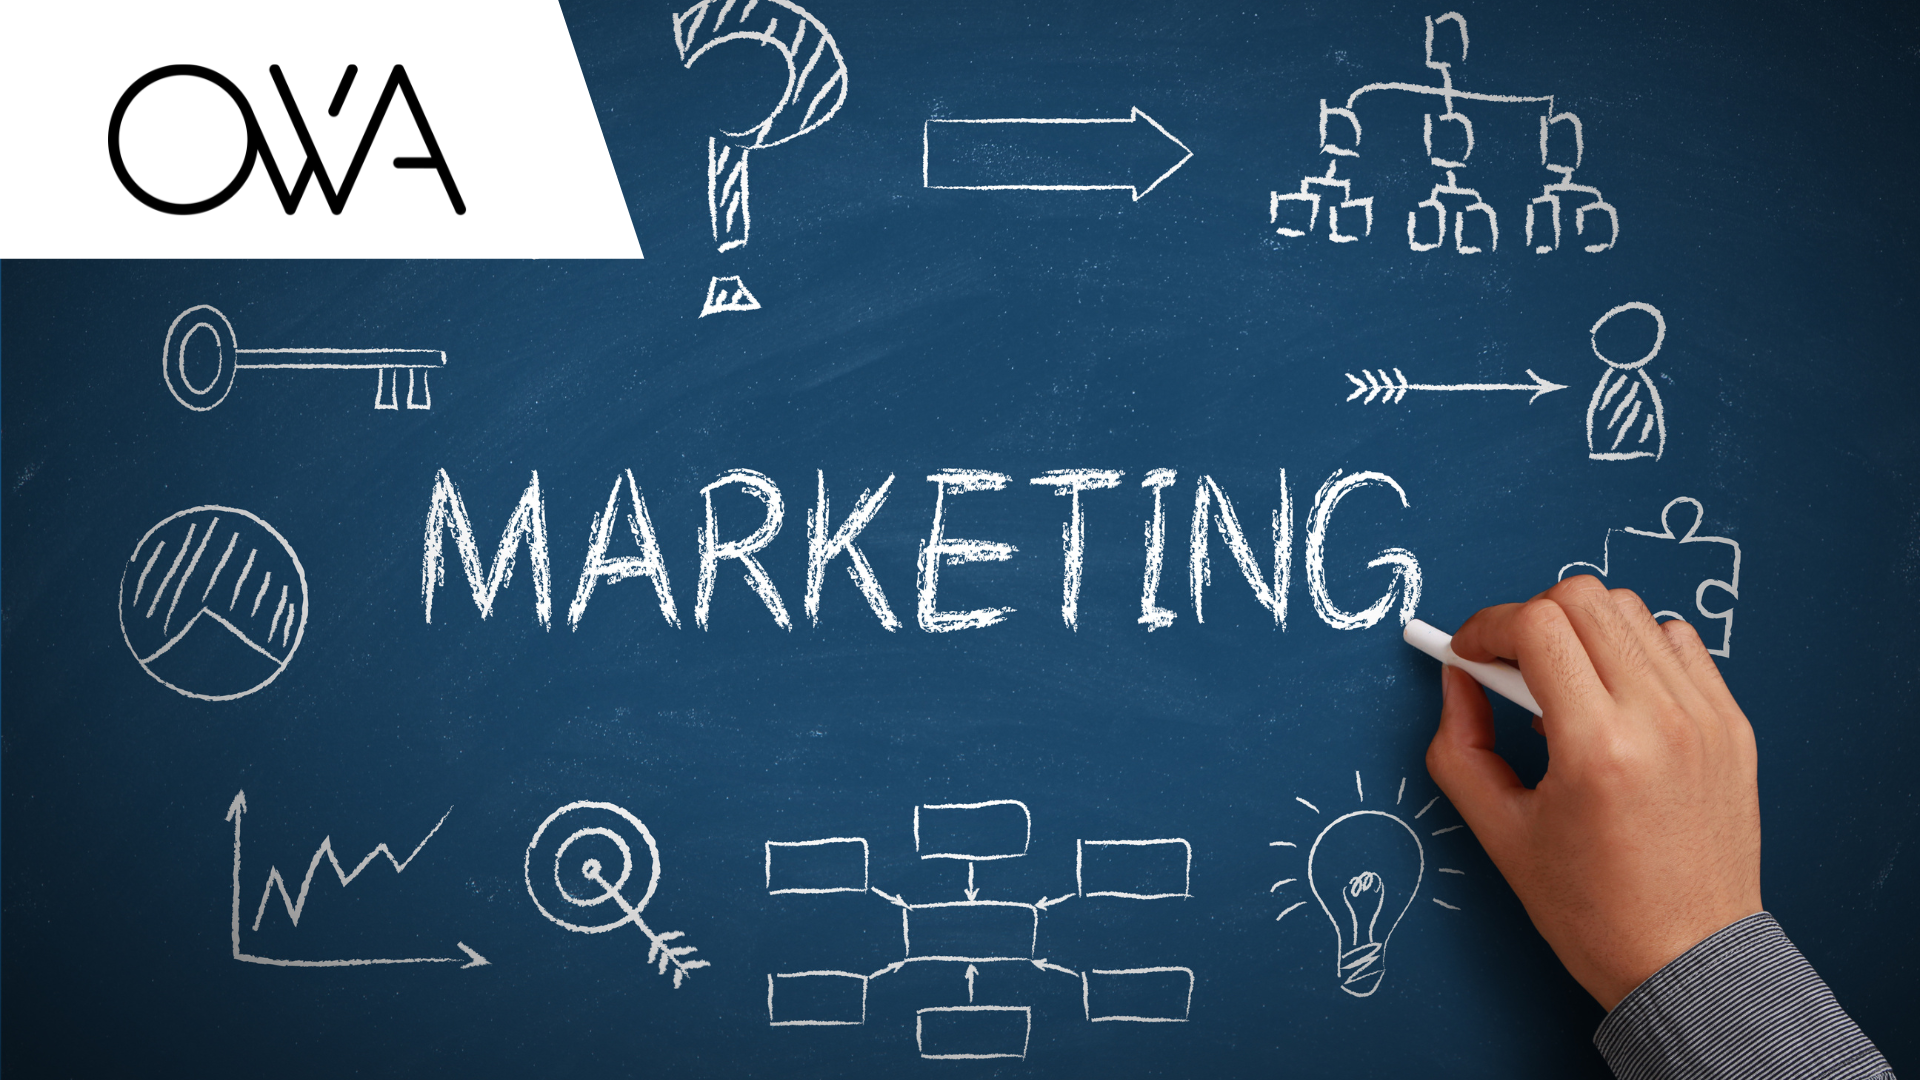 OWA - zewnętrzny dział marketingu